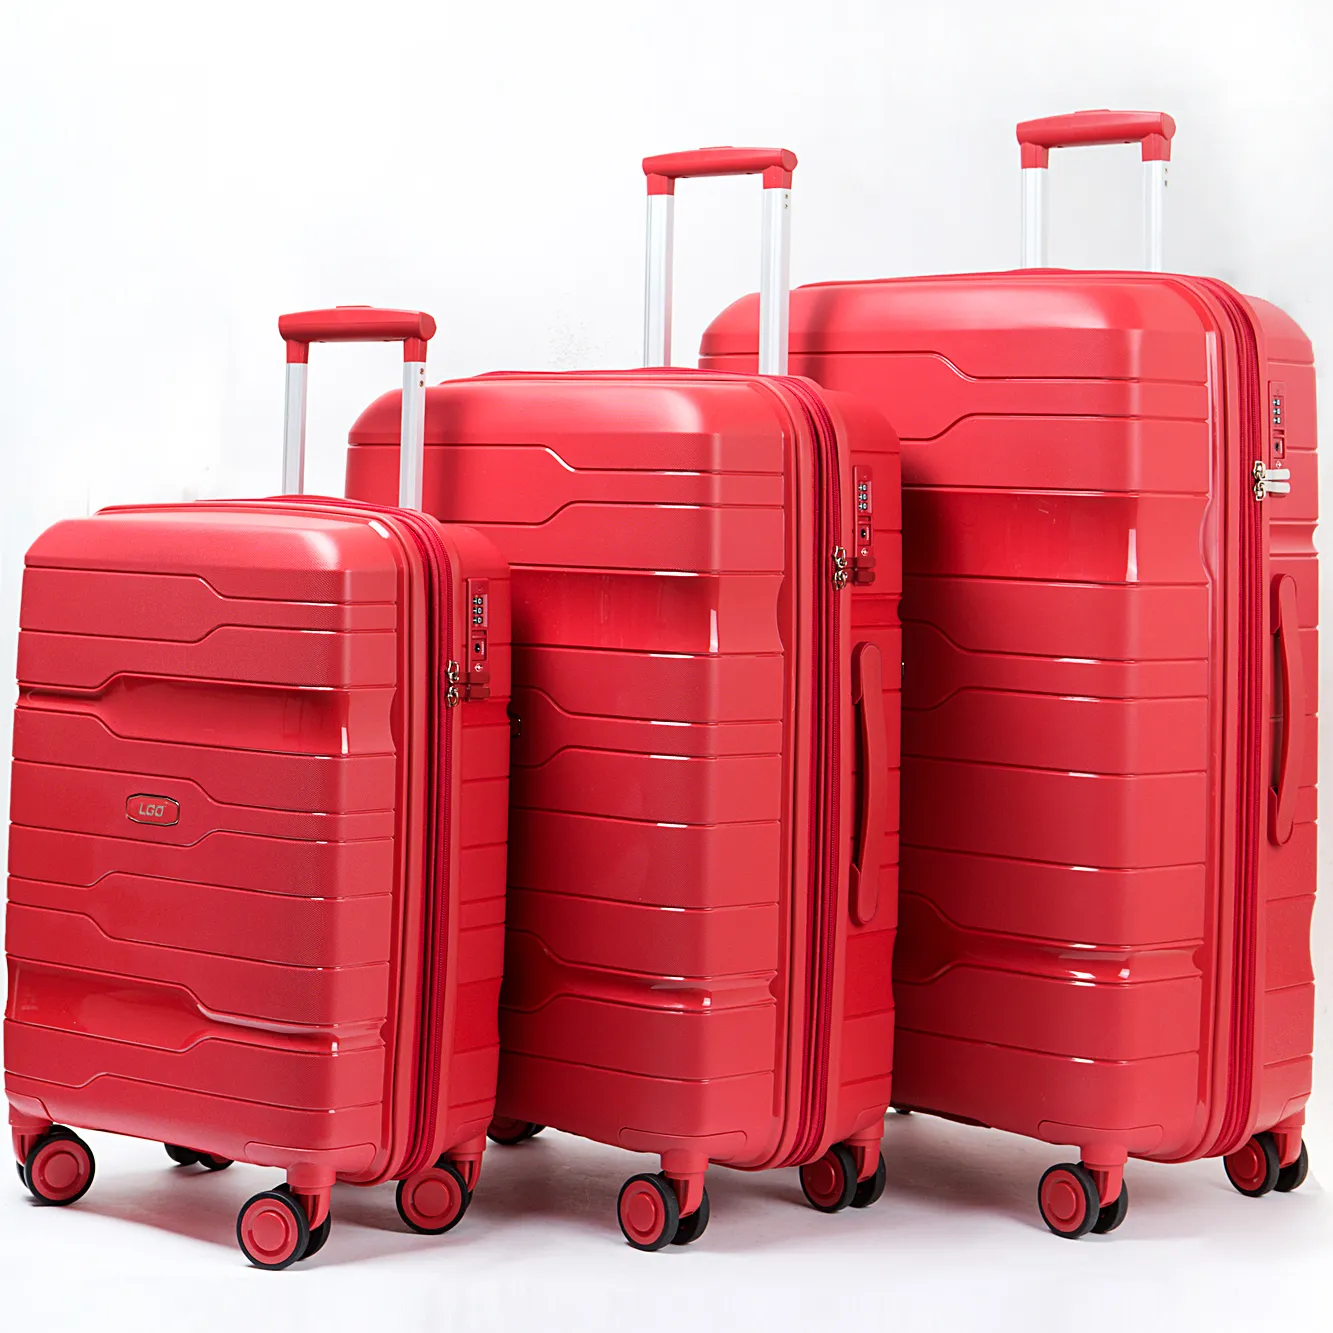 सभी सहायक उपकरण रंग उच्च विन्यास के साथ 3 टुकड़े सामान सूटकेस और बाजार में लोकप्रिय